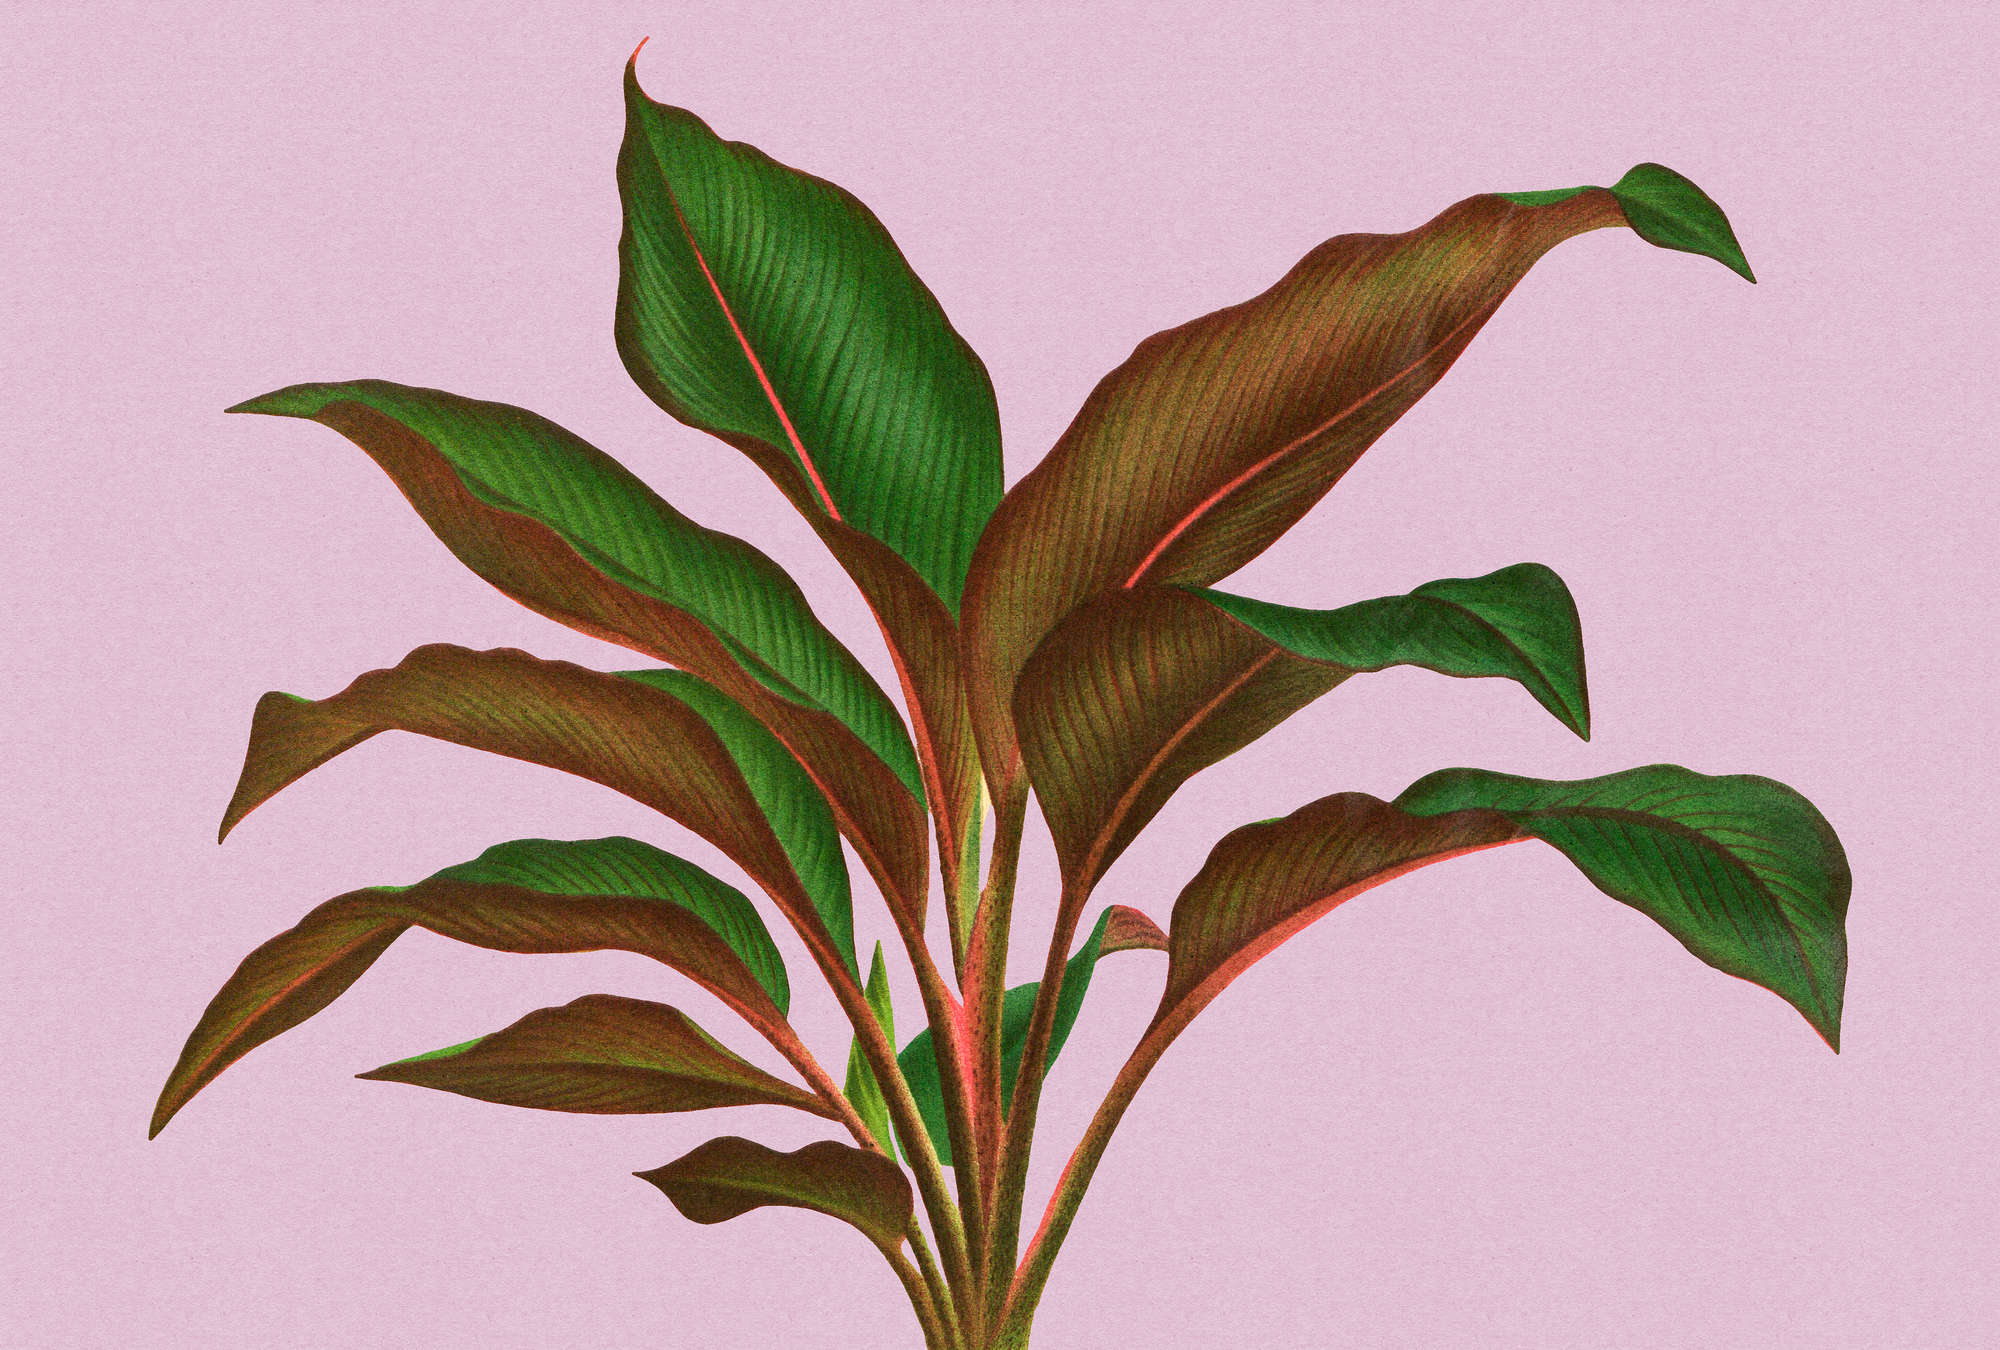             Leaf Garden 3 - Feuilles Papier peint rose avec feuille de fougère tropicale
        